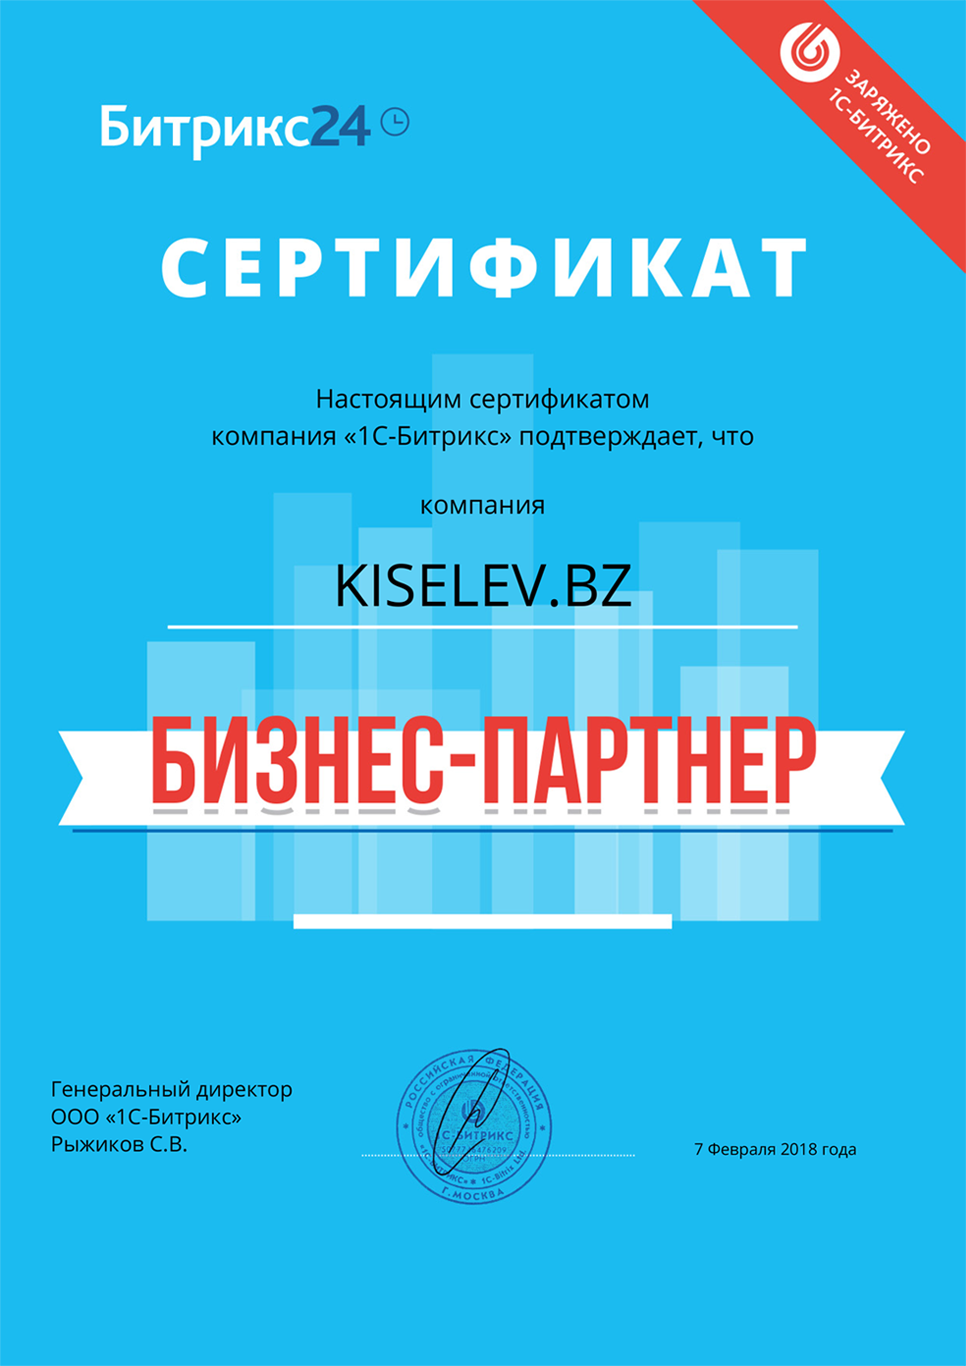 Сертификат партнёра по АМОСРМ в Николаевске